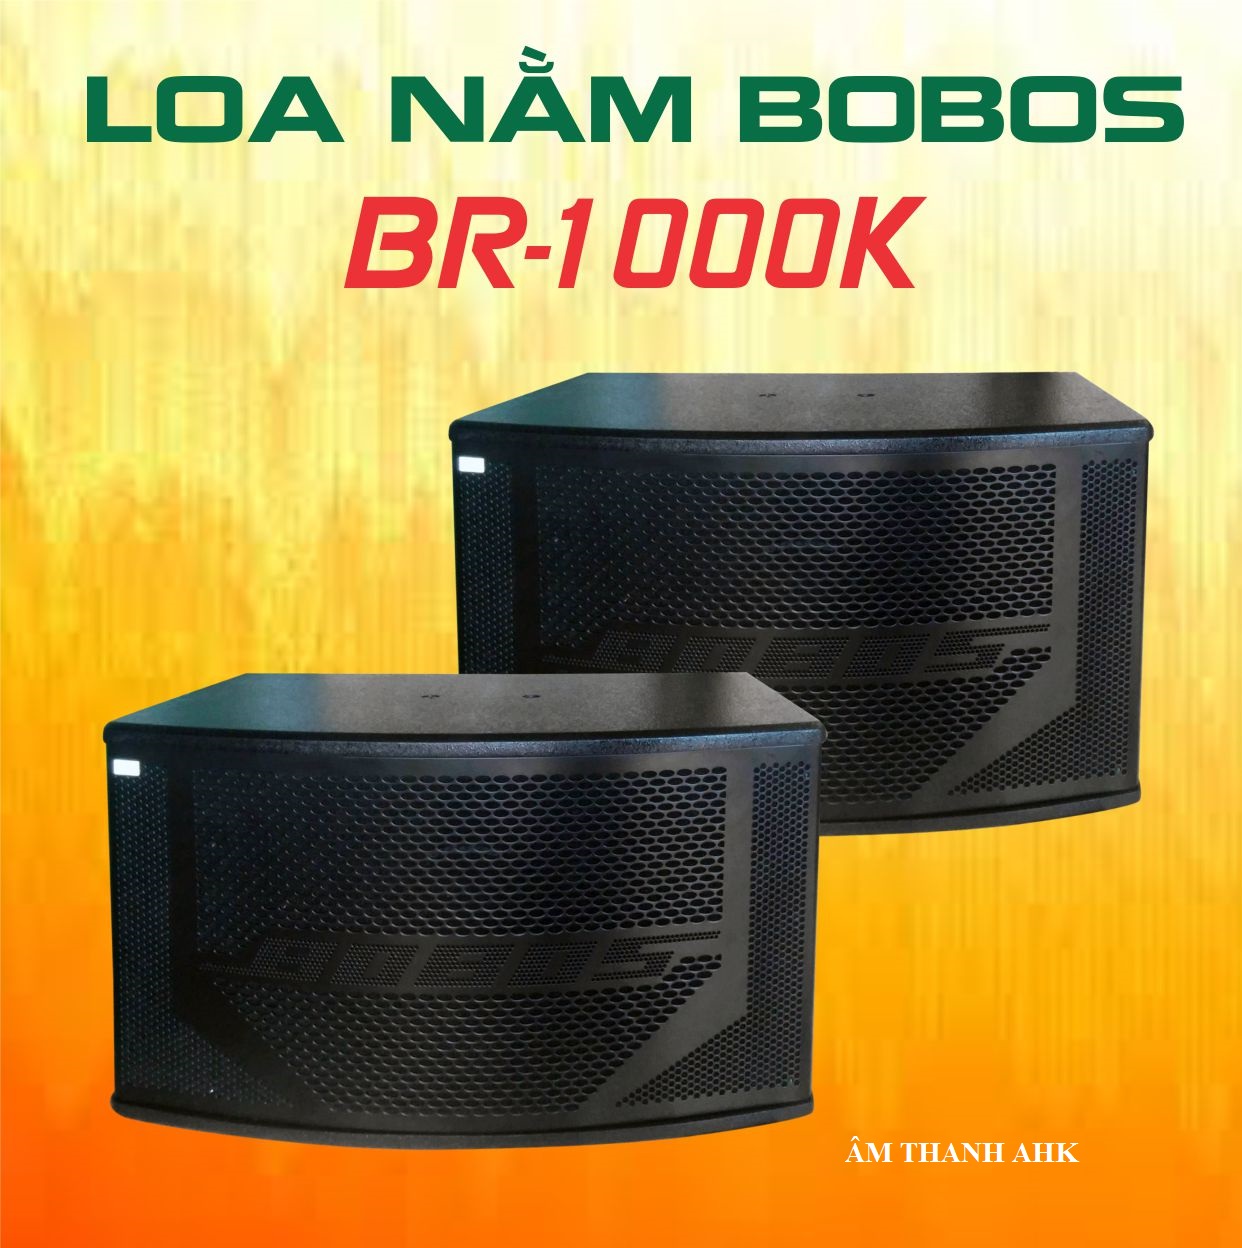 Loa nằm karaoke BOBOS BR-1000K- Hàng chính hãng